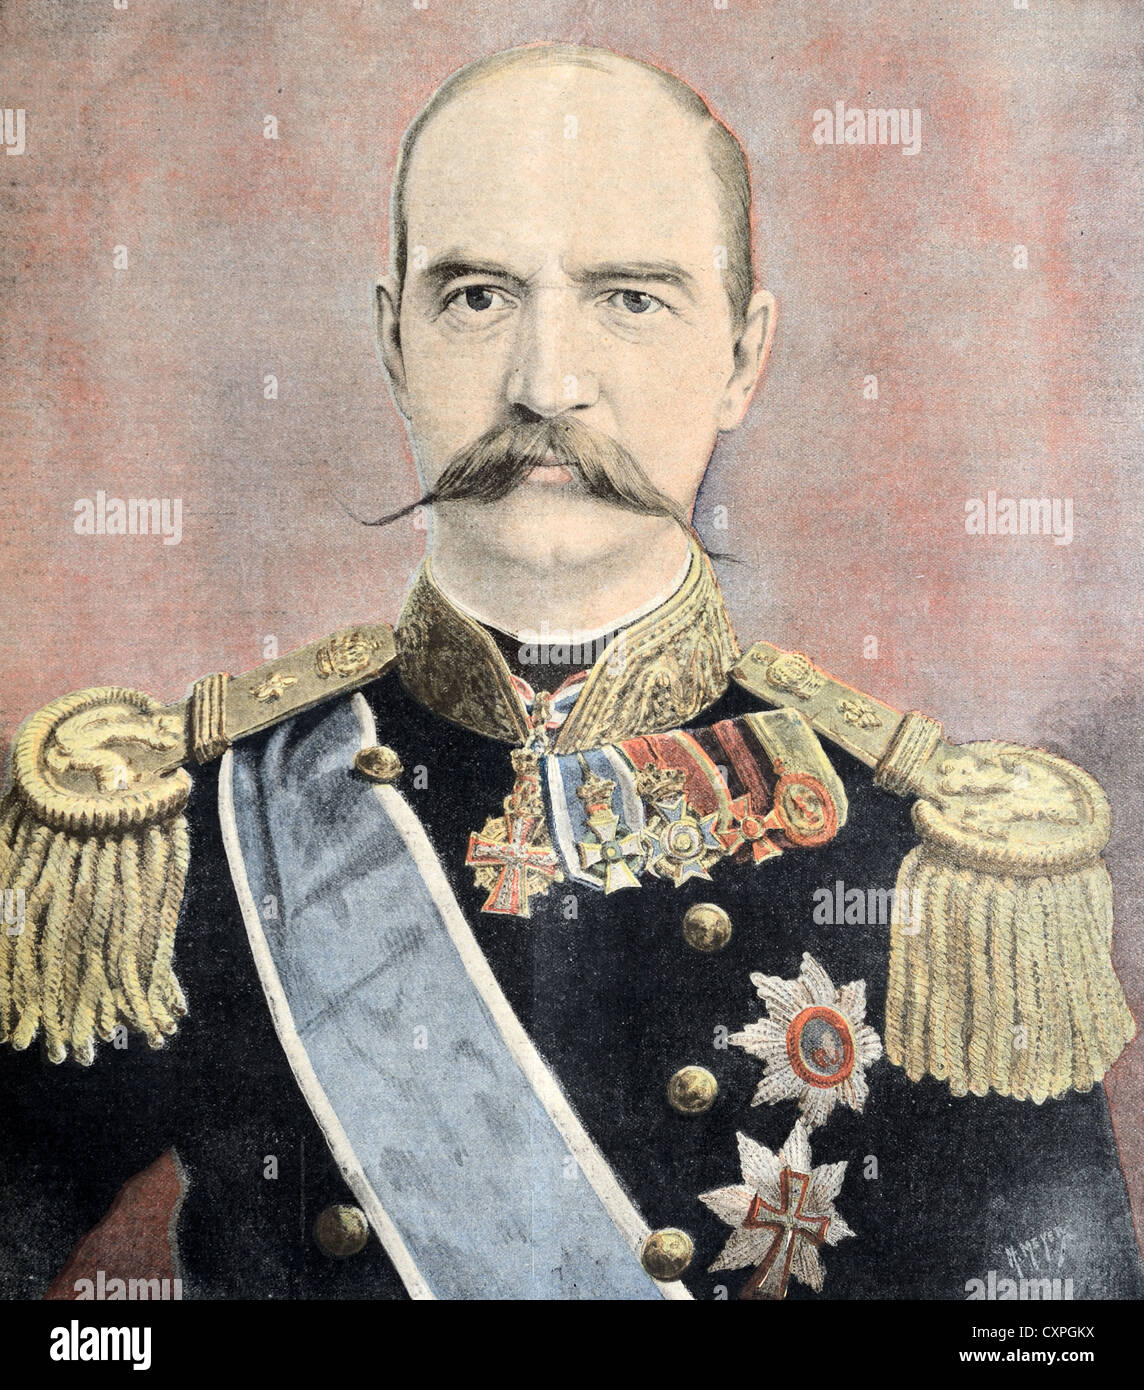 Retrato del rey Jorge I de Grecia (1845-1913) vestido con uniforme militar. Ilustración Vintage o Grabado Antiguo Foto de stock